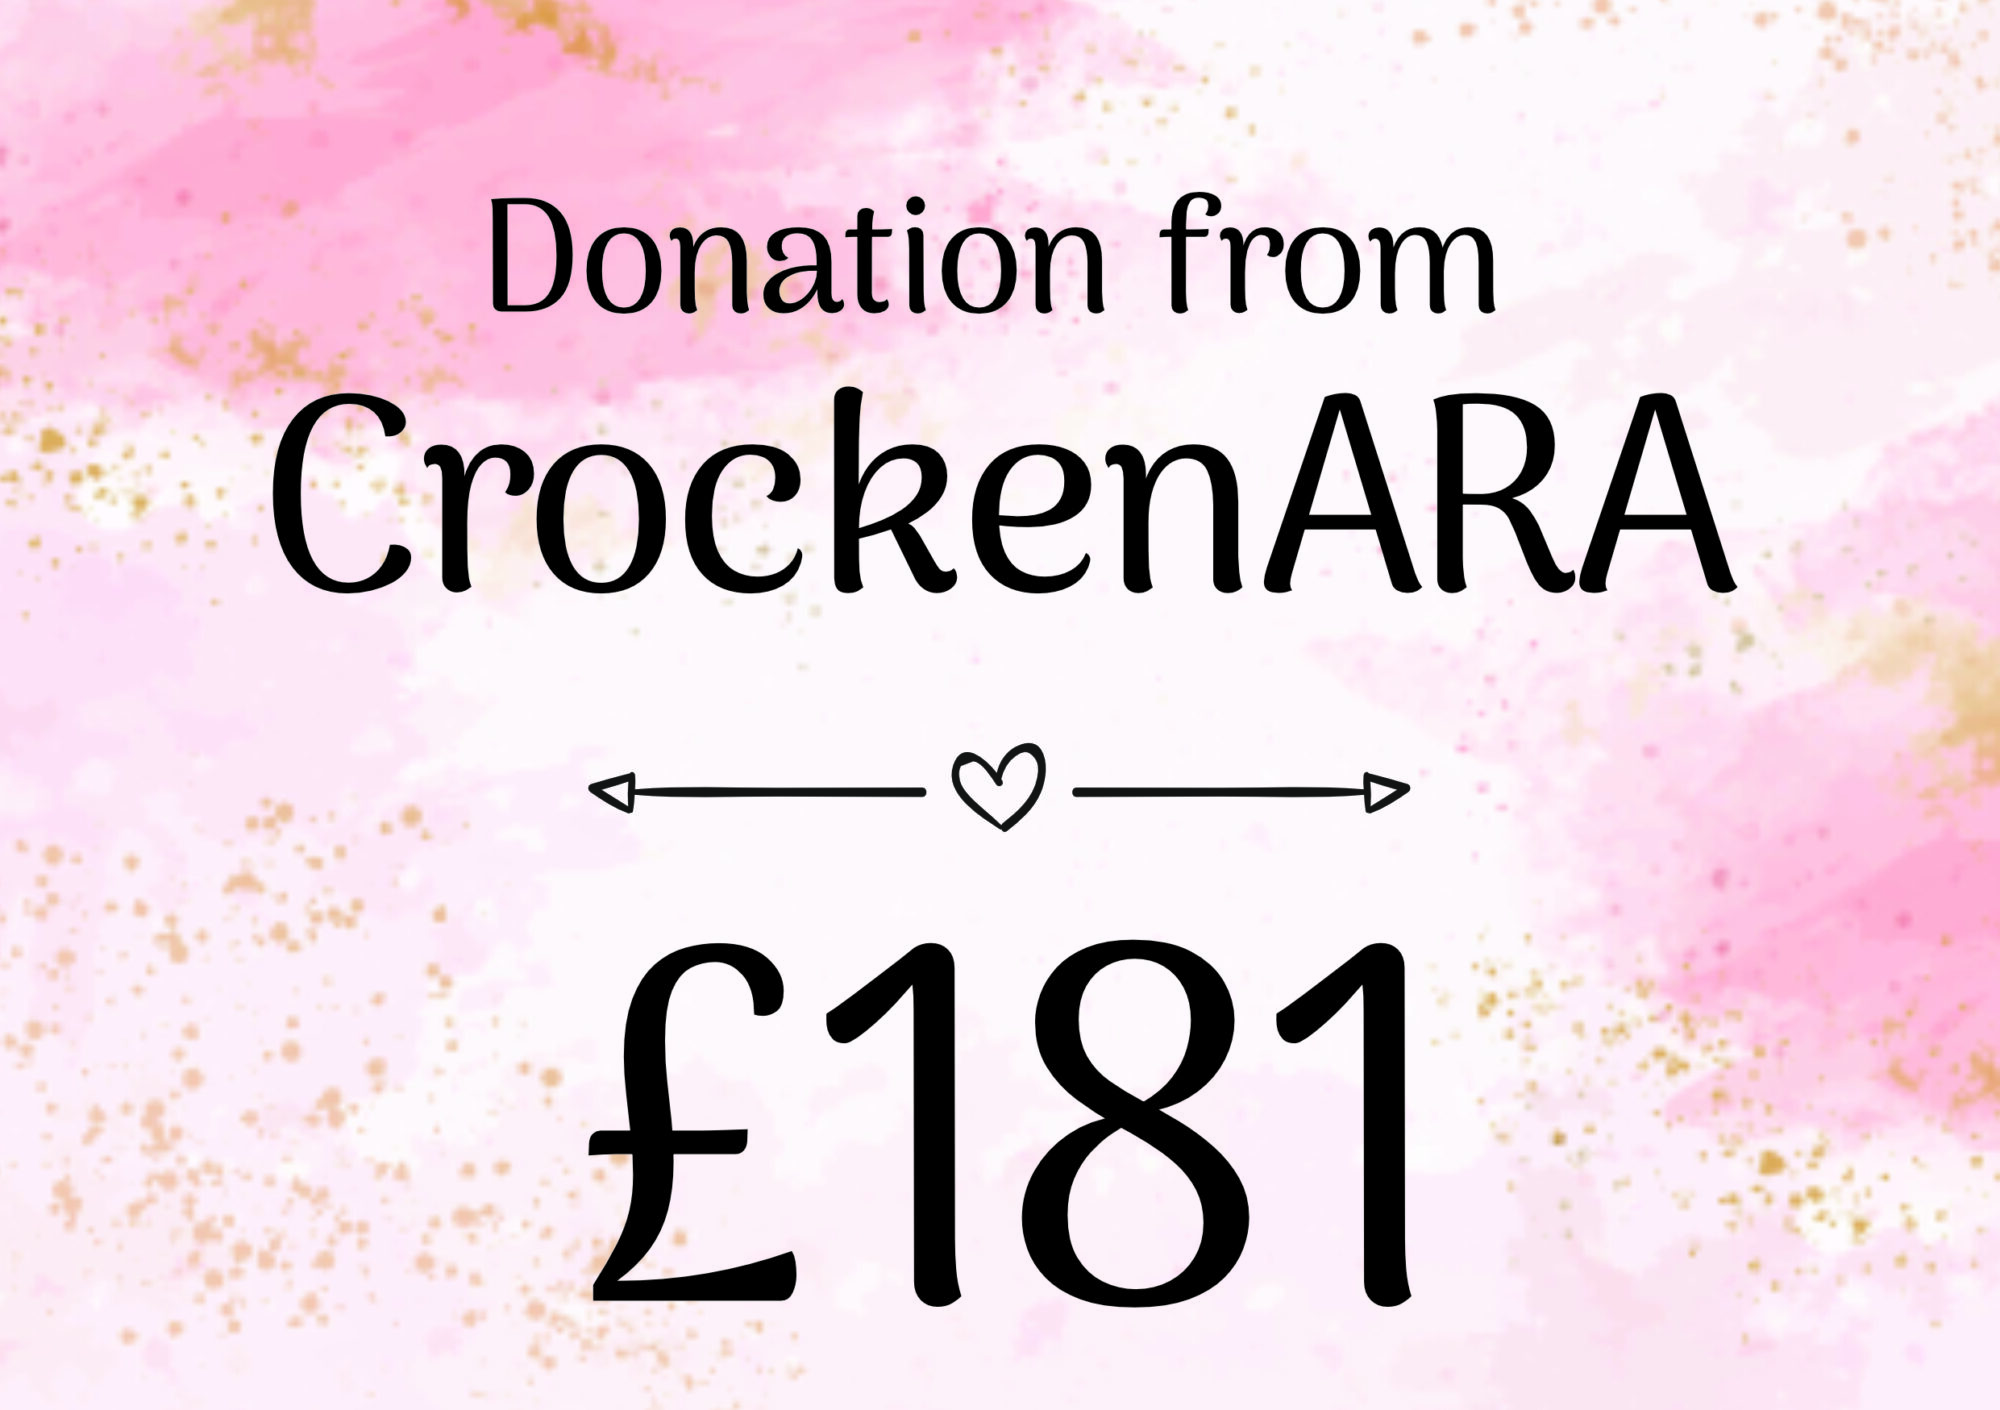 CrockenARA - £181